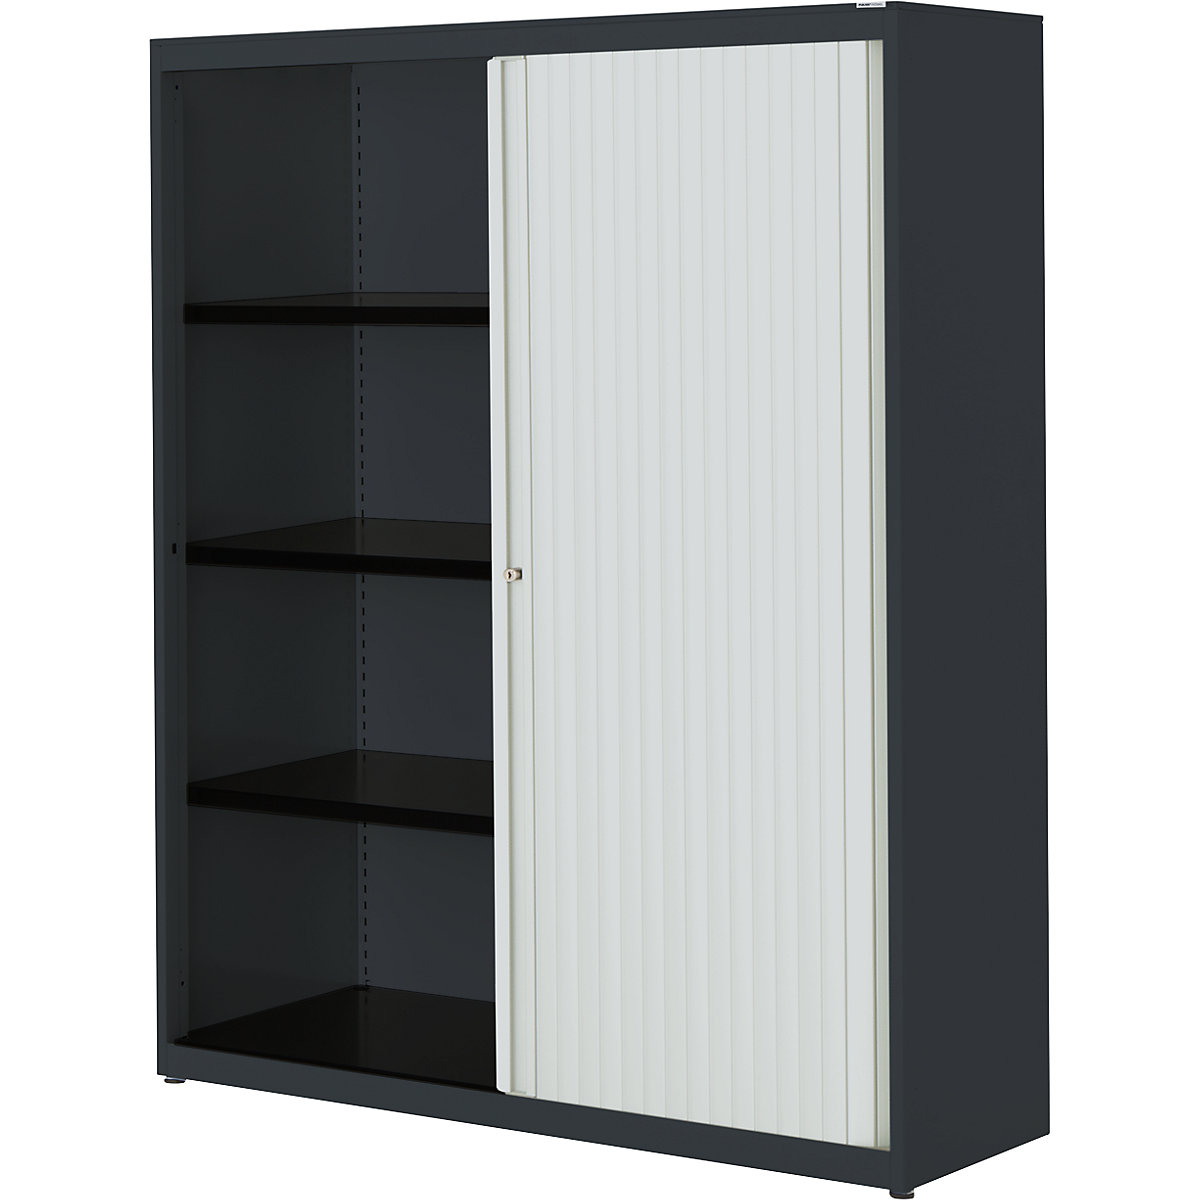 Horizontal roller shutter cupboard – mauser, HxWxD 1516 x 1200 x 432 mm, steel plate, 3 shelves, charcoal / light grey / charcoal-3